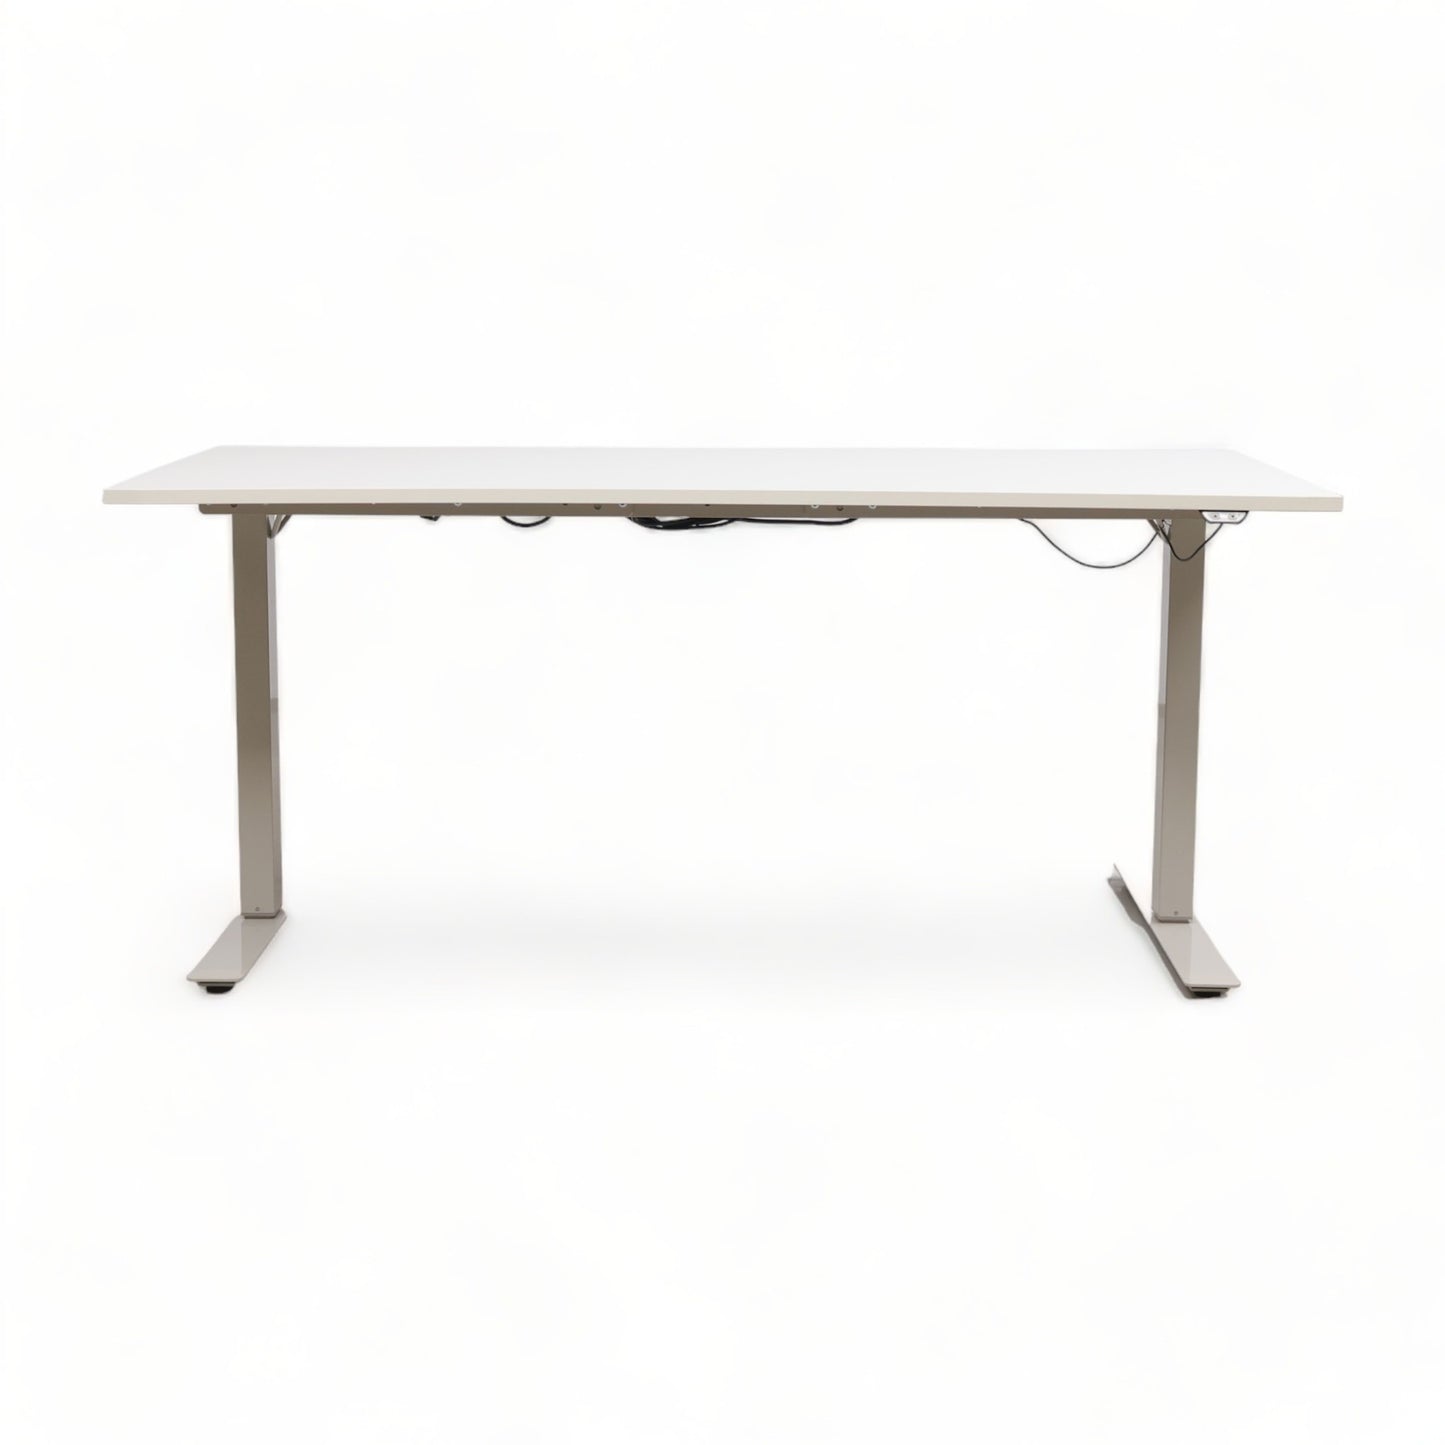 Kvalitetsikret | 160x80cm Elektrisk ståbord, hvit/grå